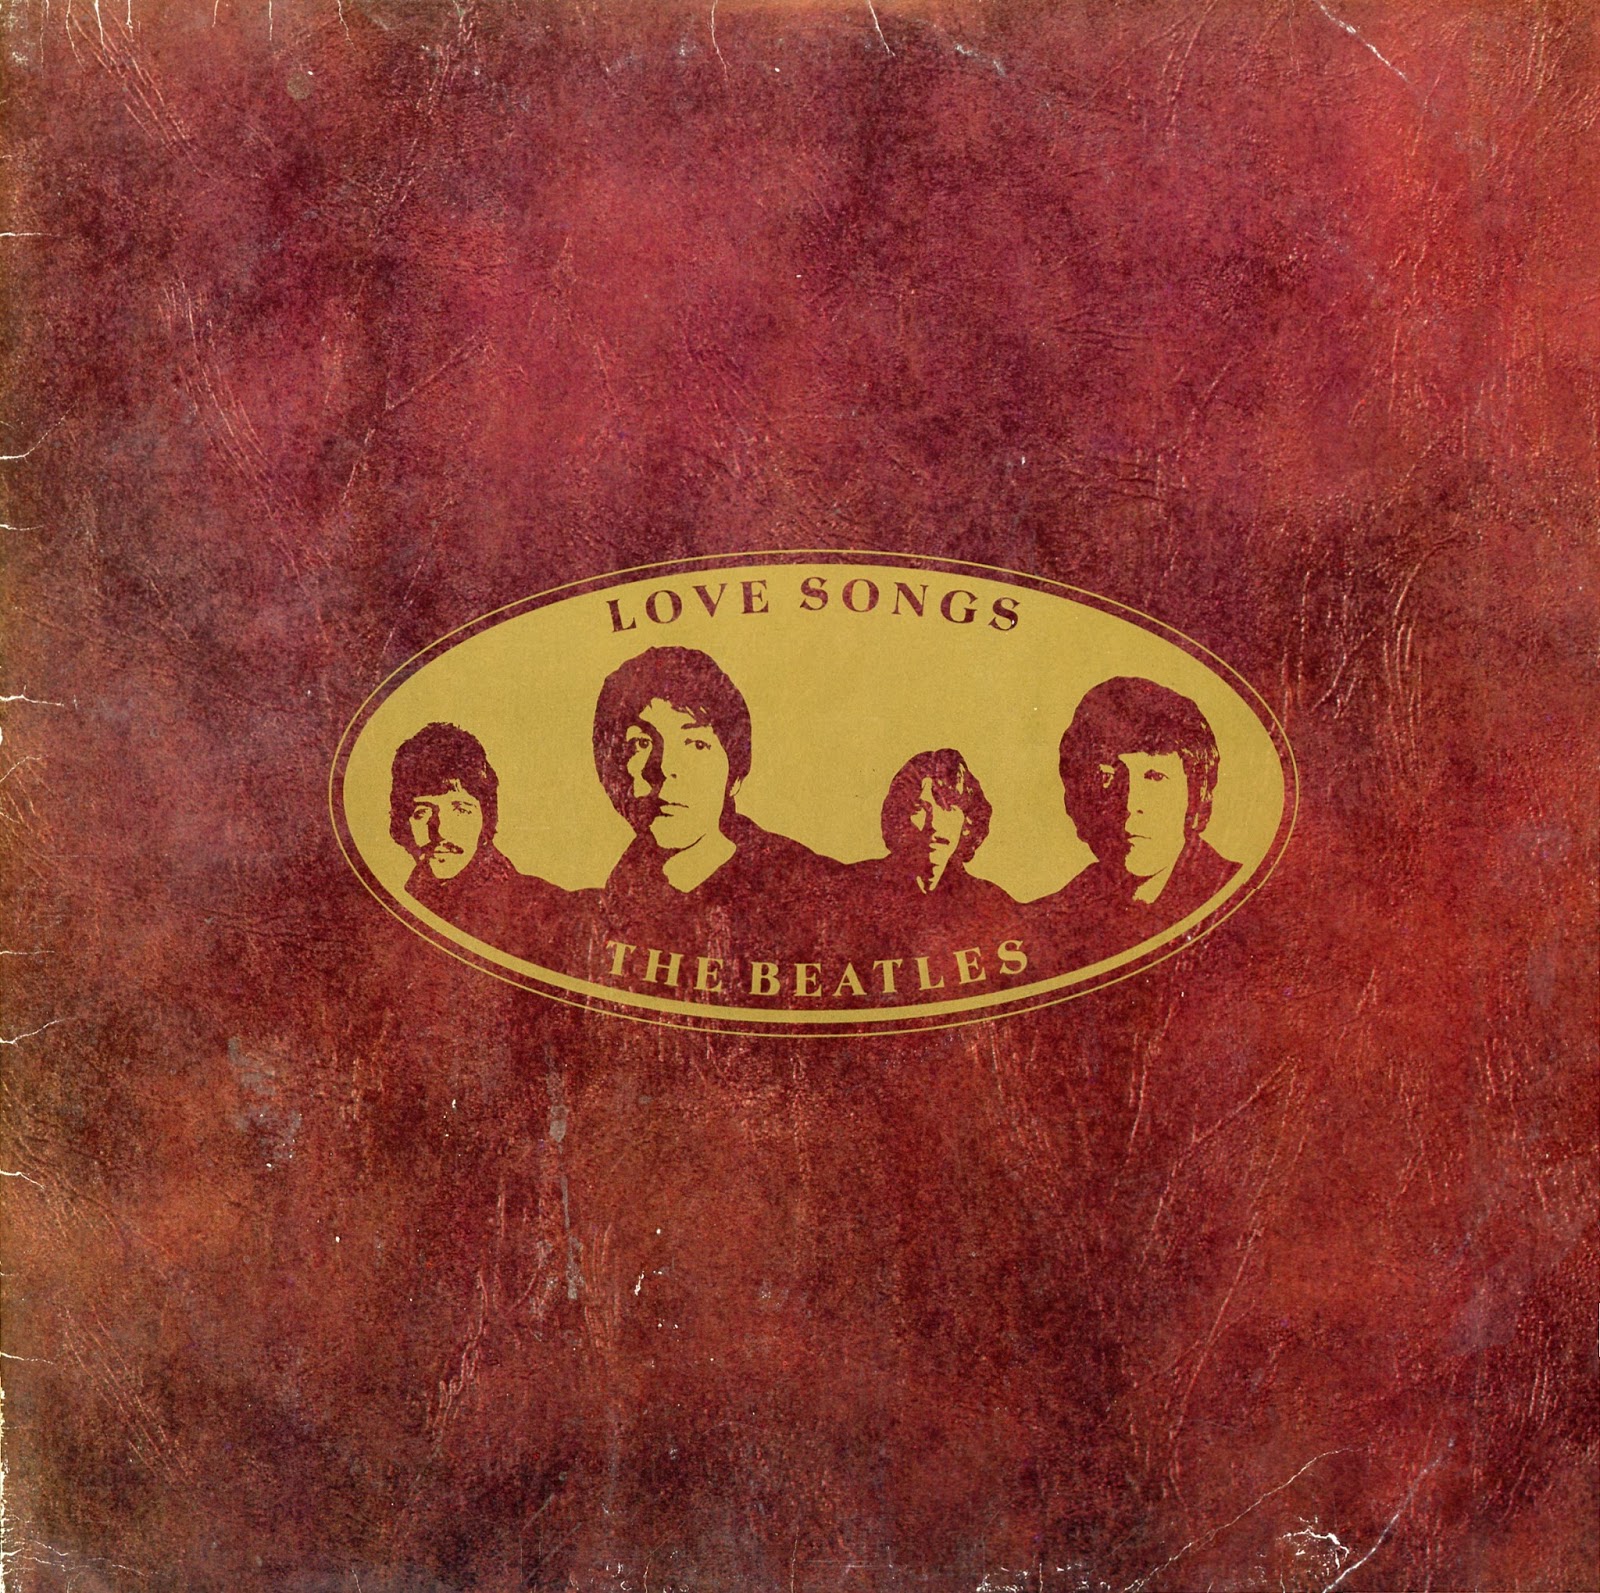 Главная песня альбома. Beatles 1977. The Beatles Love Songs 1977. Виниловая пластинка Beatles 1977 альбом. Beatles "Love Songs".